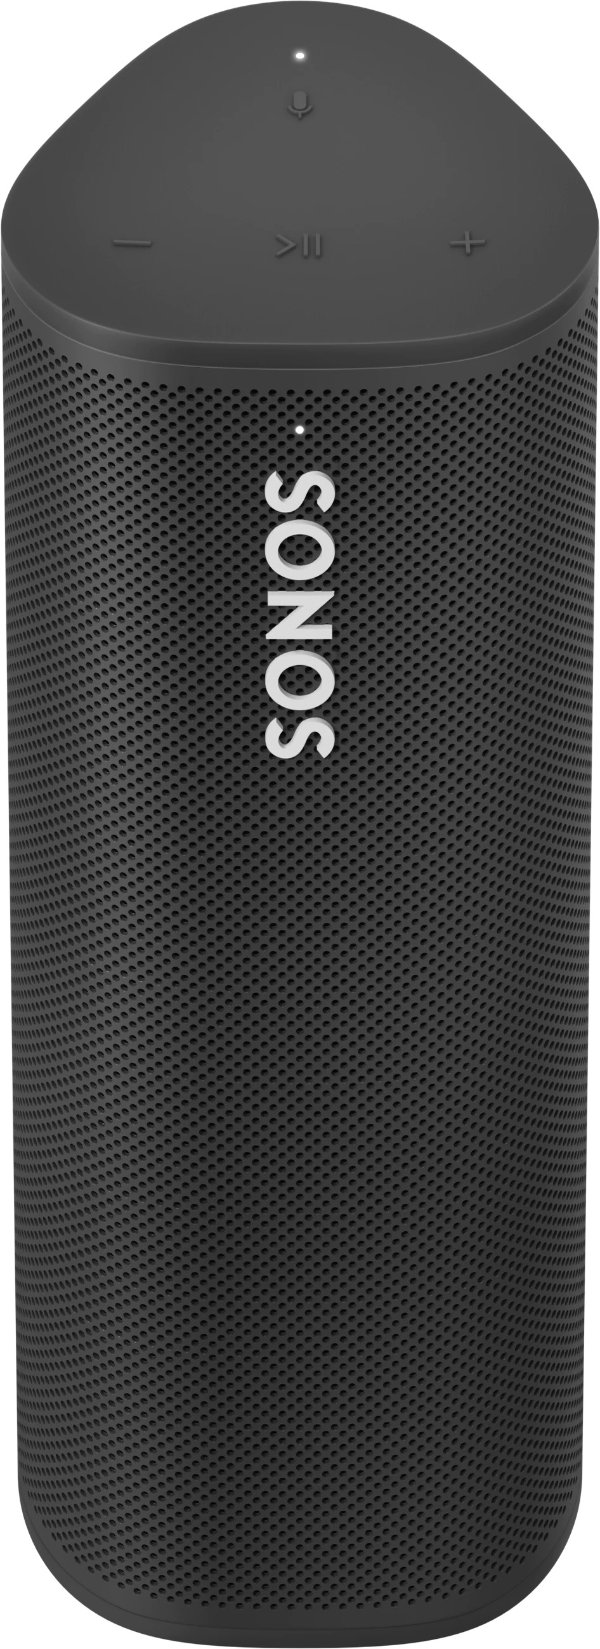 Roam: A Portable Waterproof Smart Speaker | Sonos